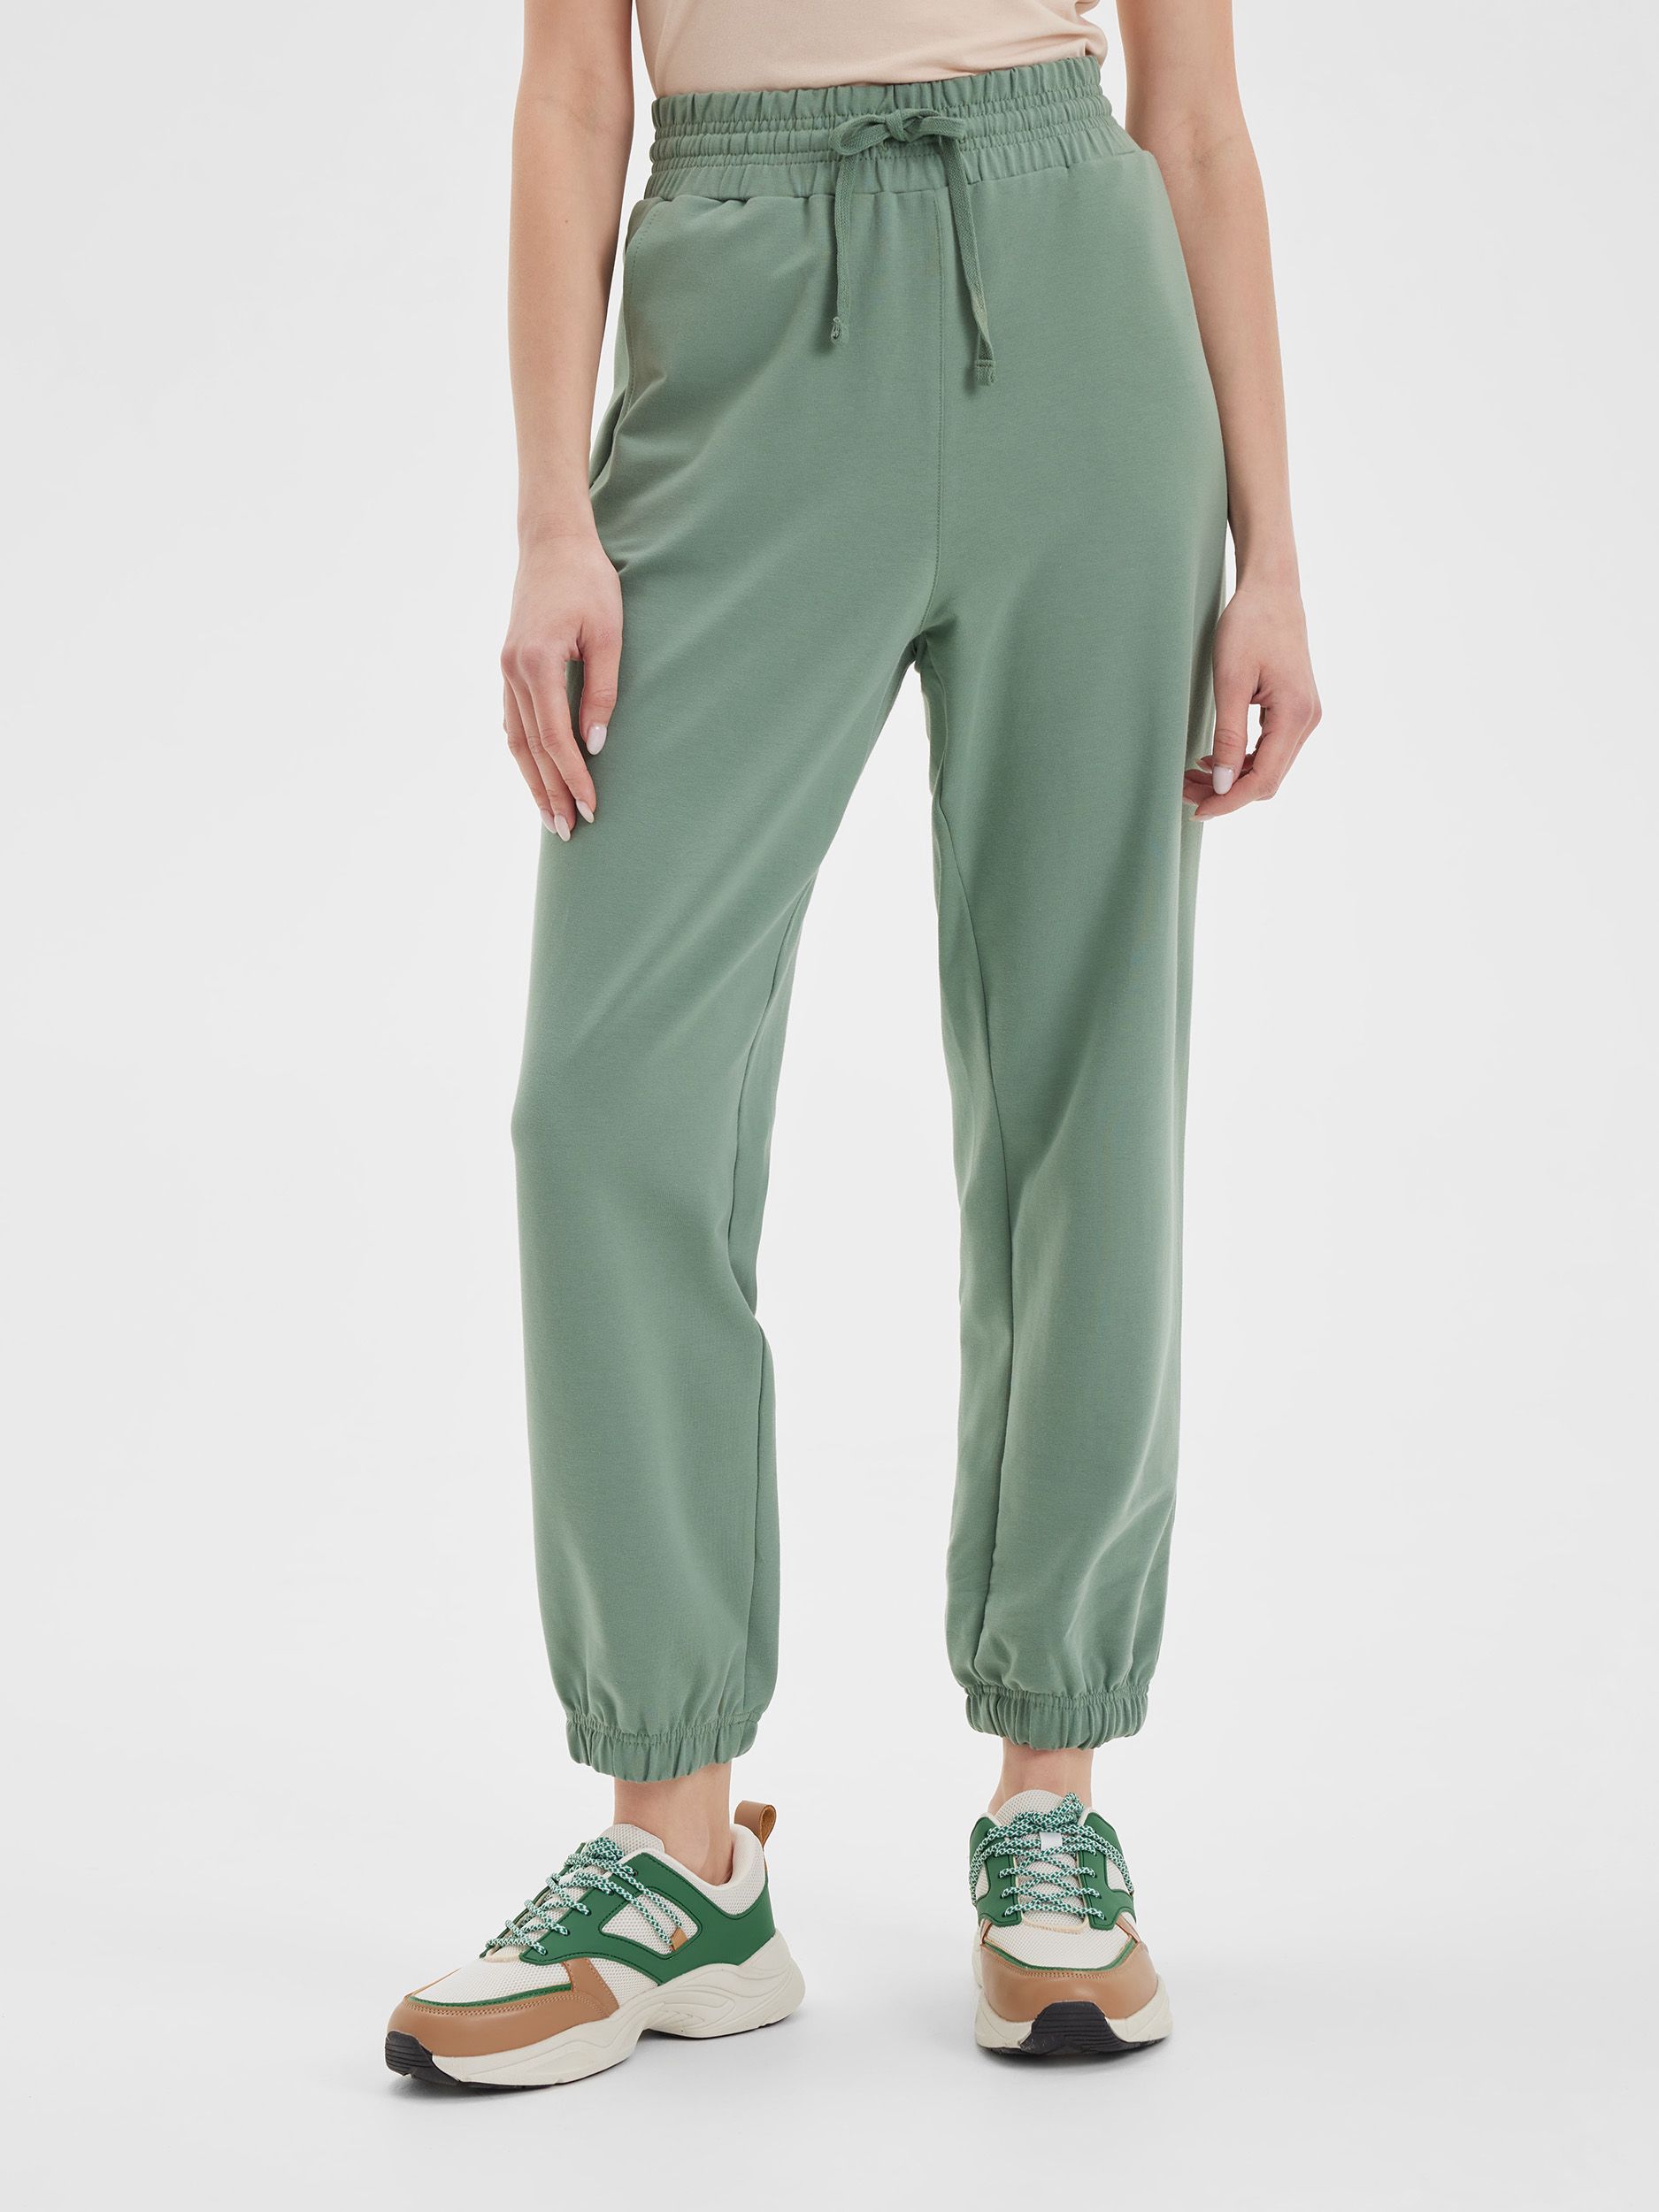 Спортивные брюки женские LAINA S21-W1-754 зеленые 58 RU